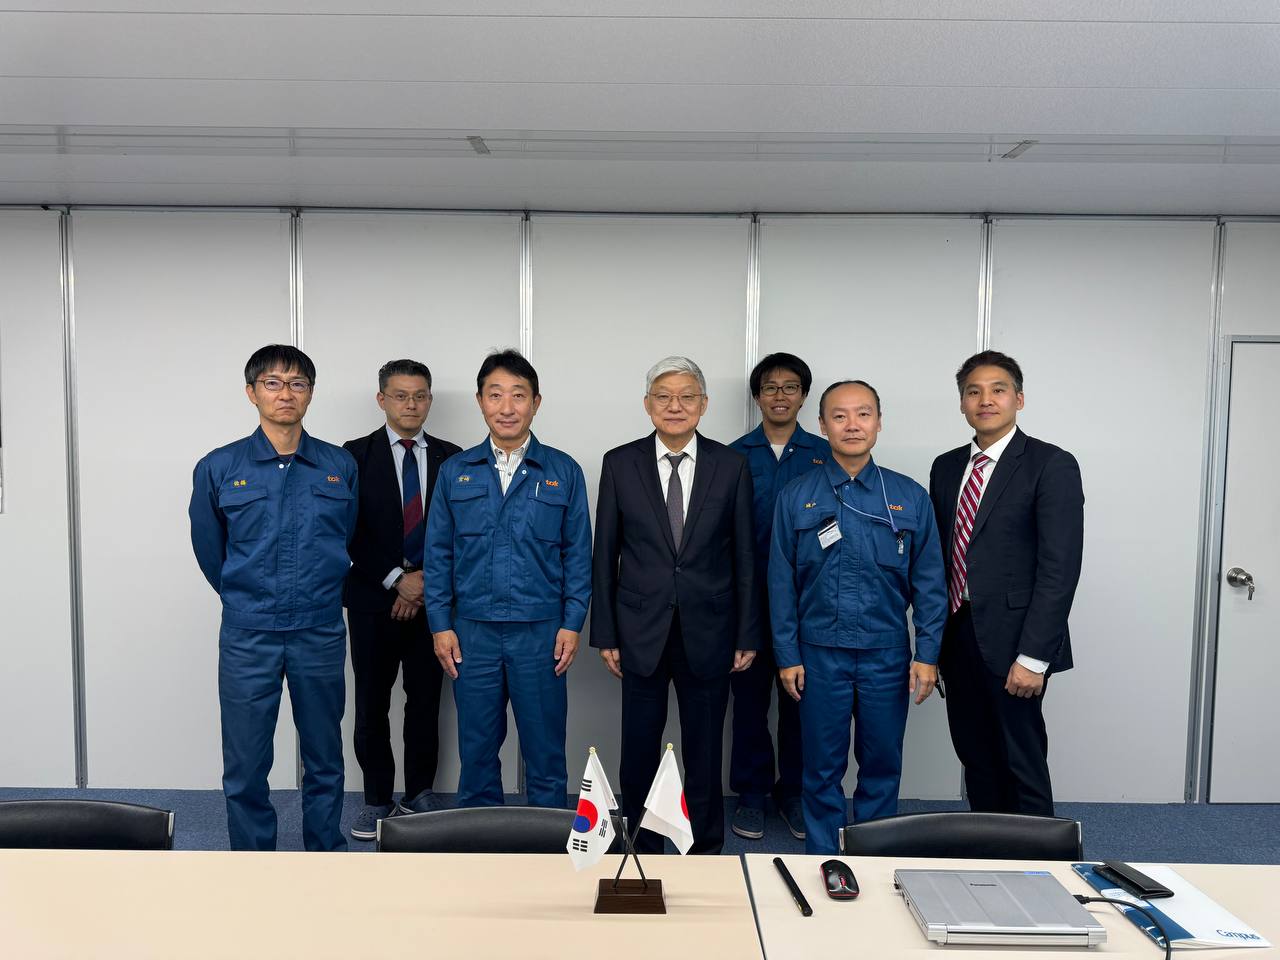 尹德敏駐日大使、熊本県半導体工場訪問